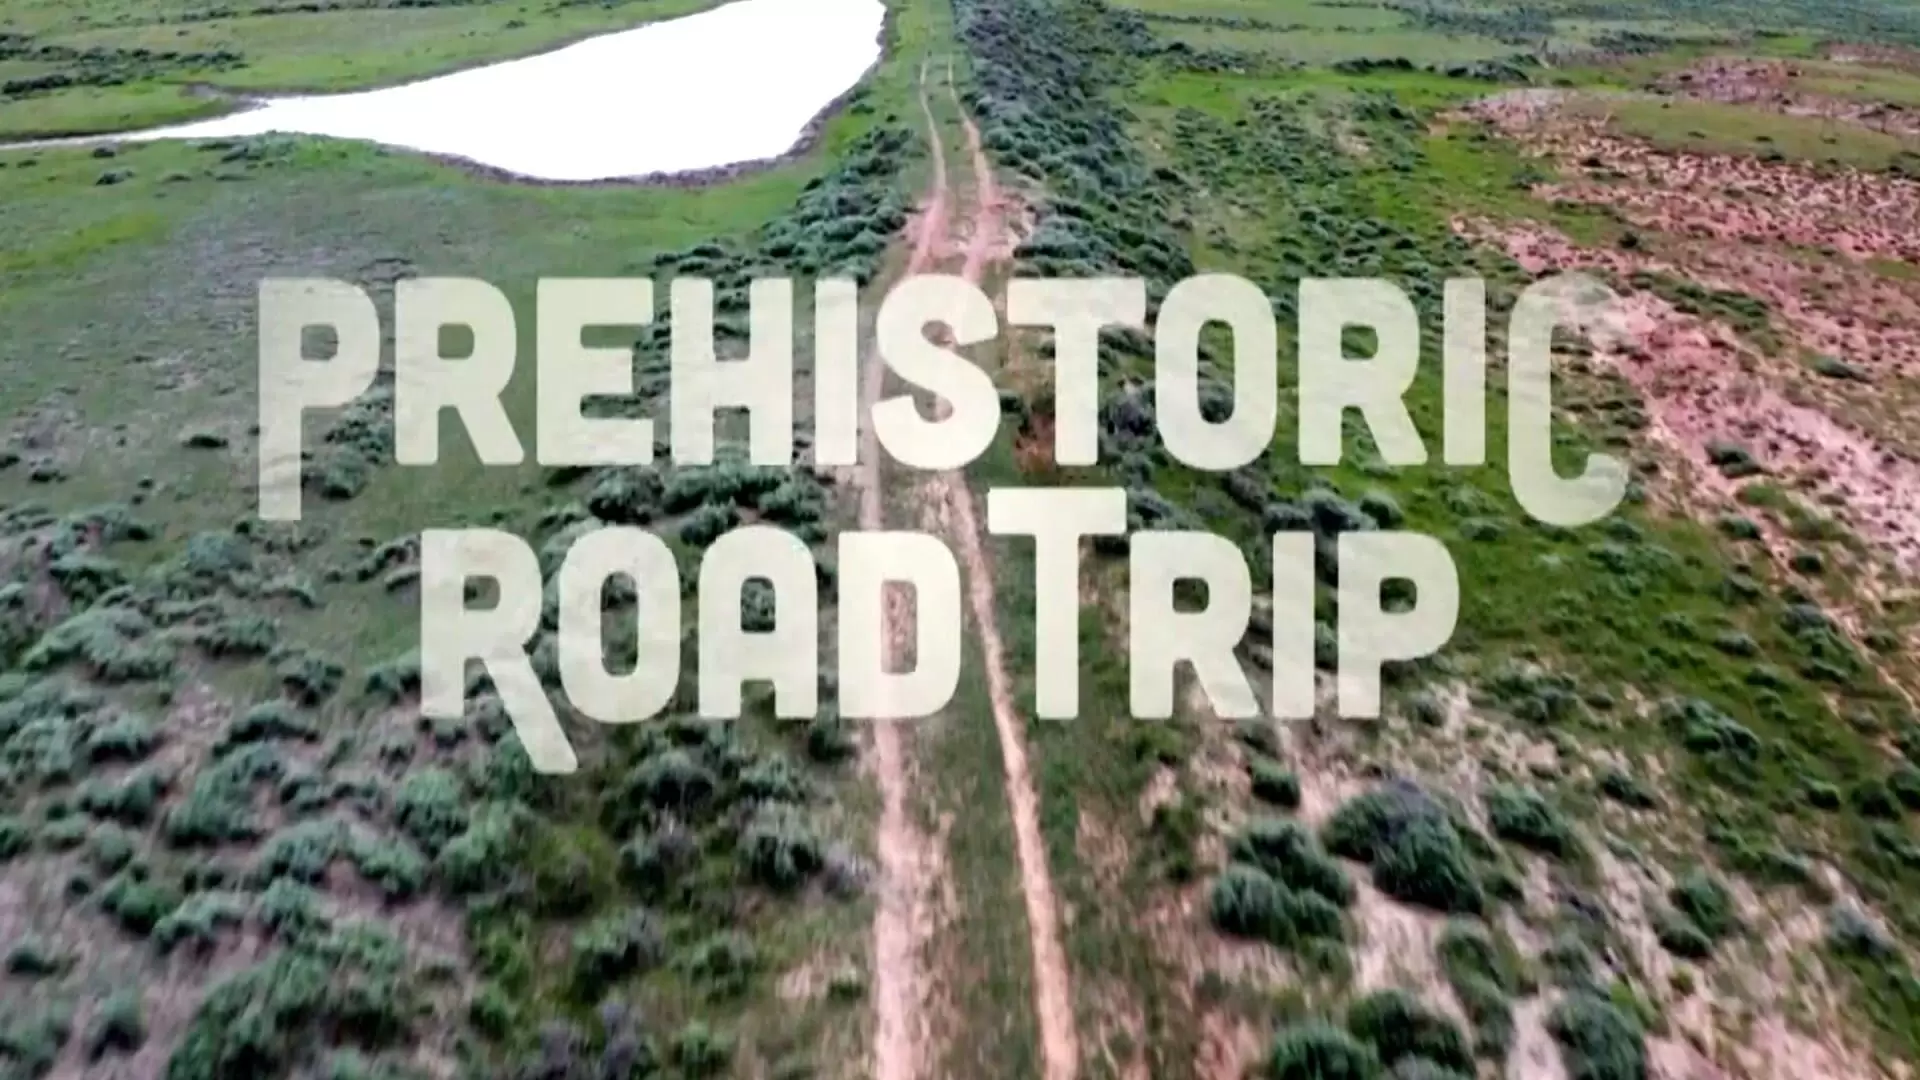 دانلود مستند Prehistoric Road Trip 2020